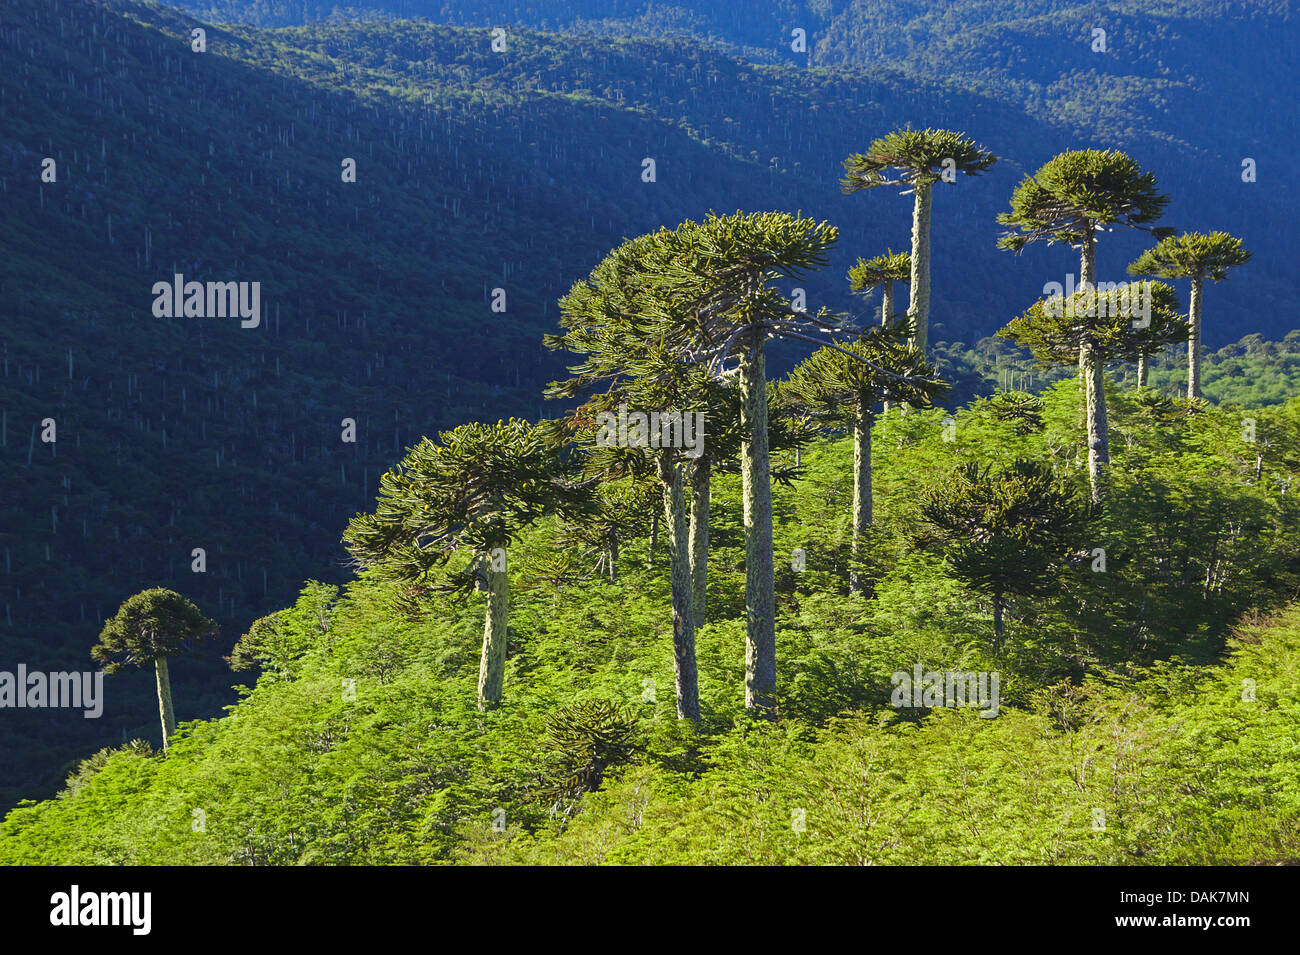 Pin du Chili (Araucaria araucana), pins du Chili à la Sierra Nevada dans la lumière du matin, le Chili, la Patagonie, les Andes, le Parc National Conguillio Banque D'Images